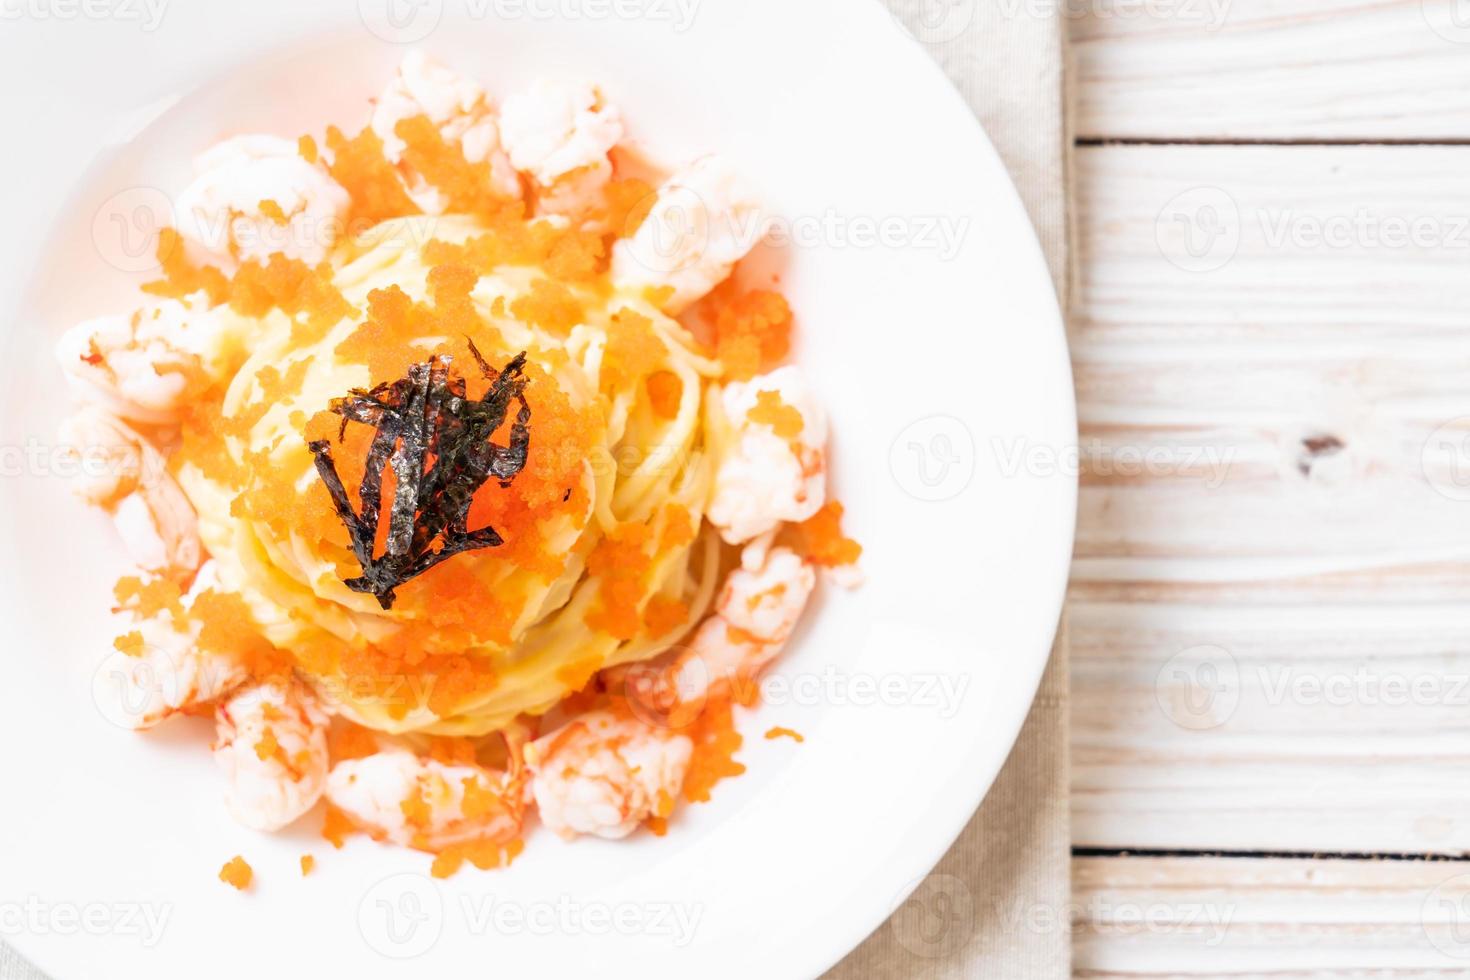 spaghetti cremosi con gamberi e uova di gamberi - fusion food style foto